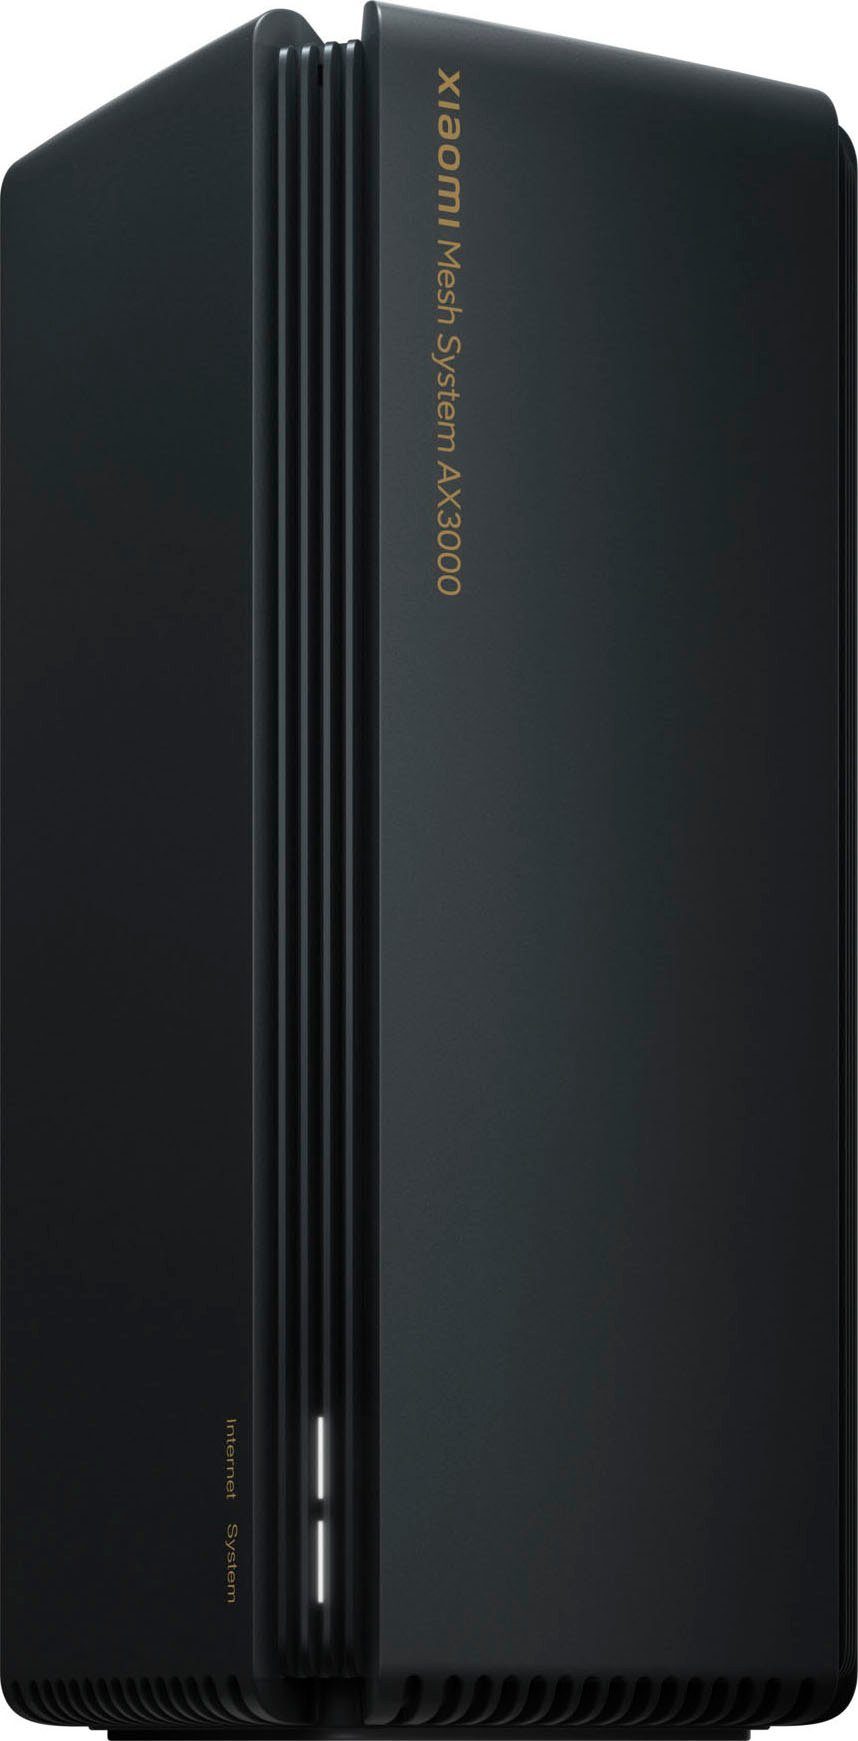 WLAN-Router RA82 Xiaomi AX3000